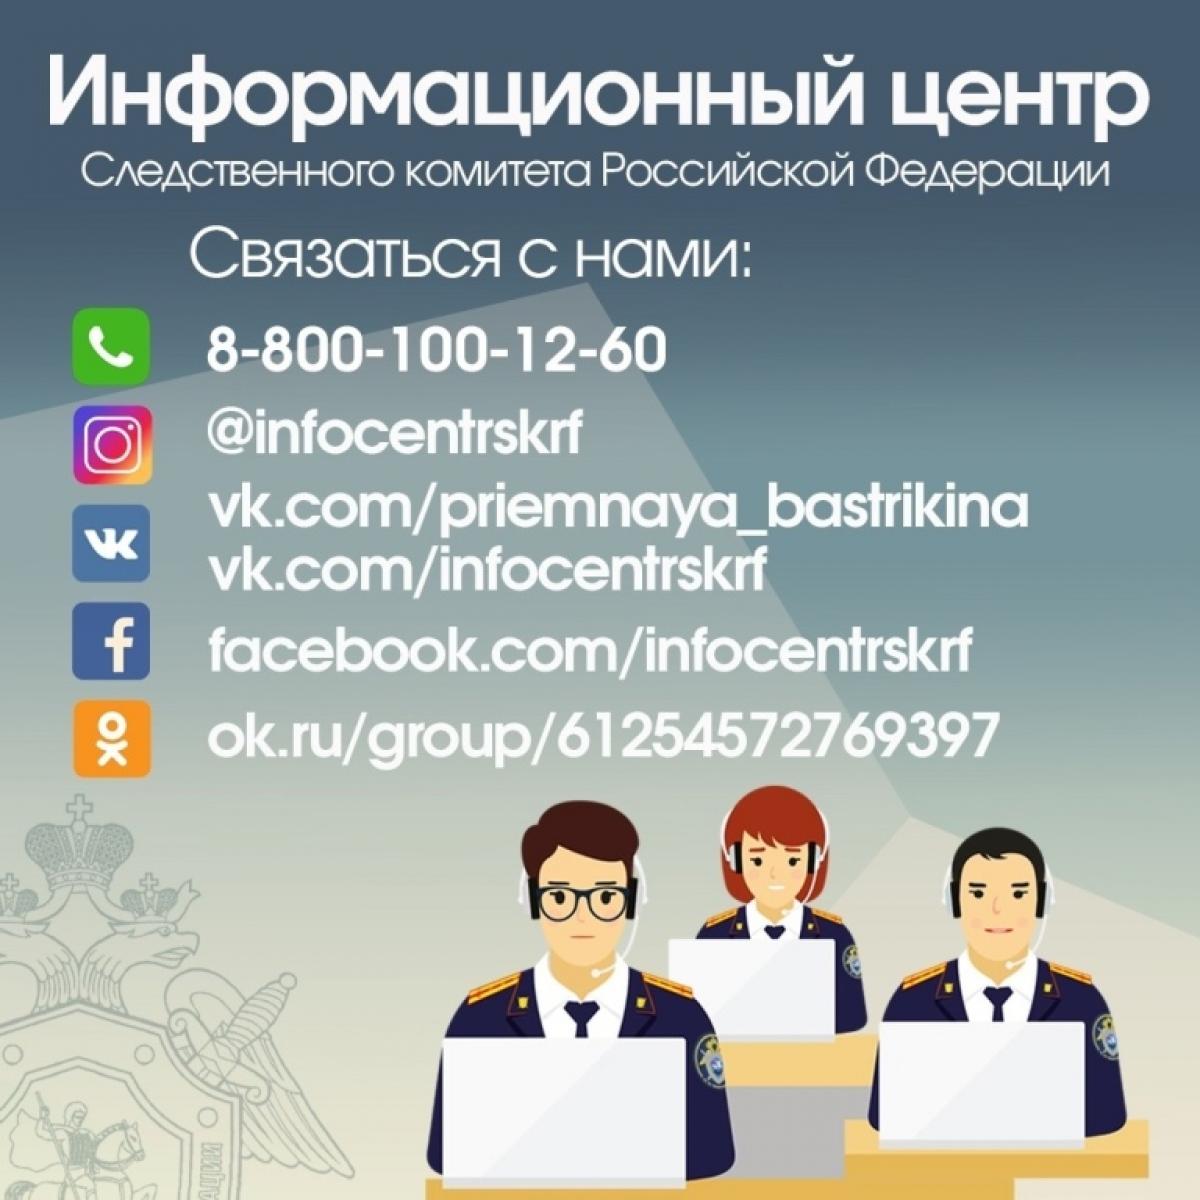 Следственный комитет России напоминает, что для граждан доступна круглосуточная связь с Информационным центром